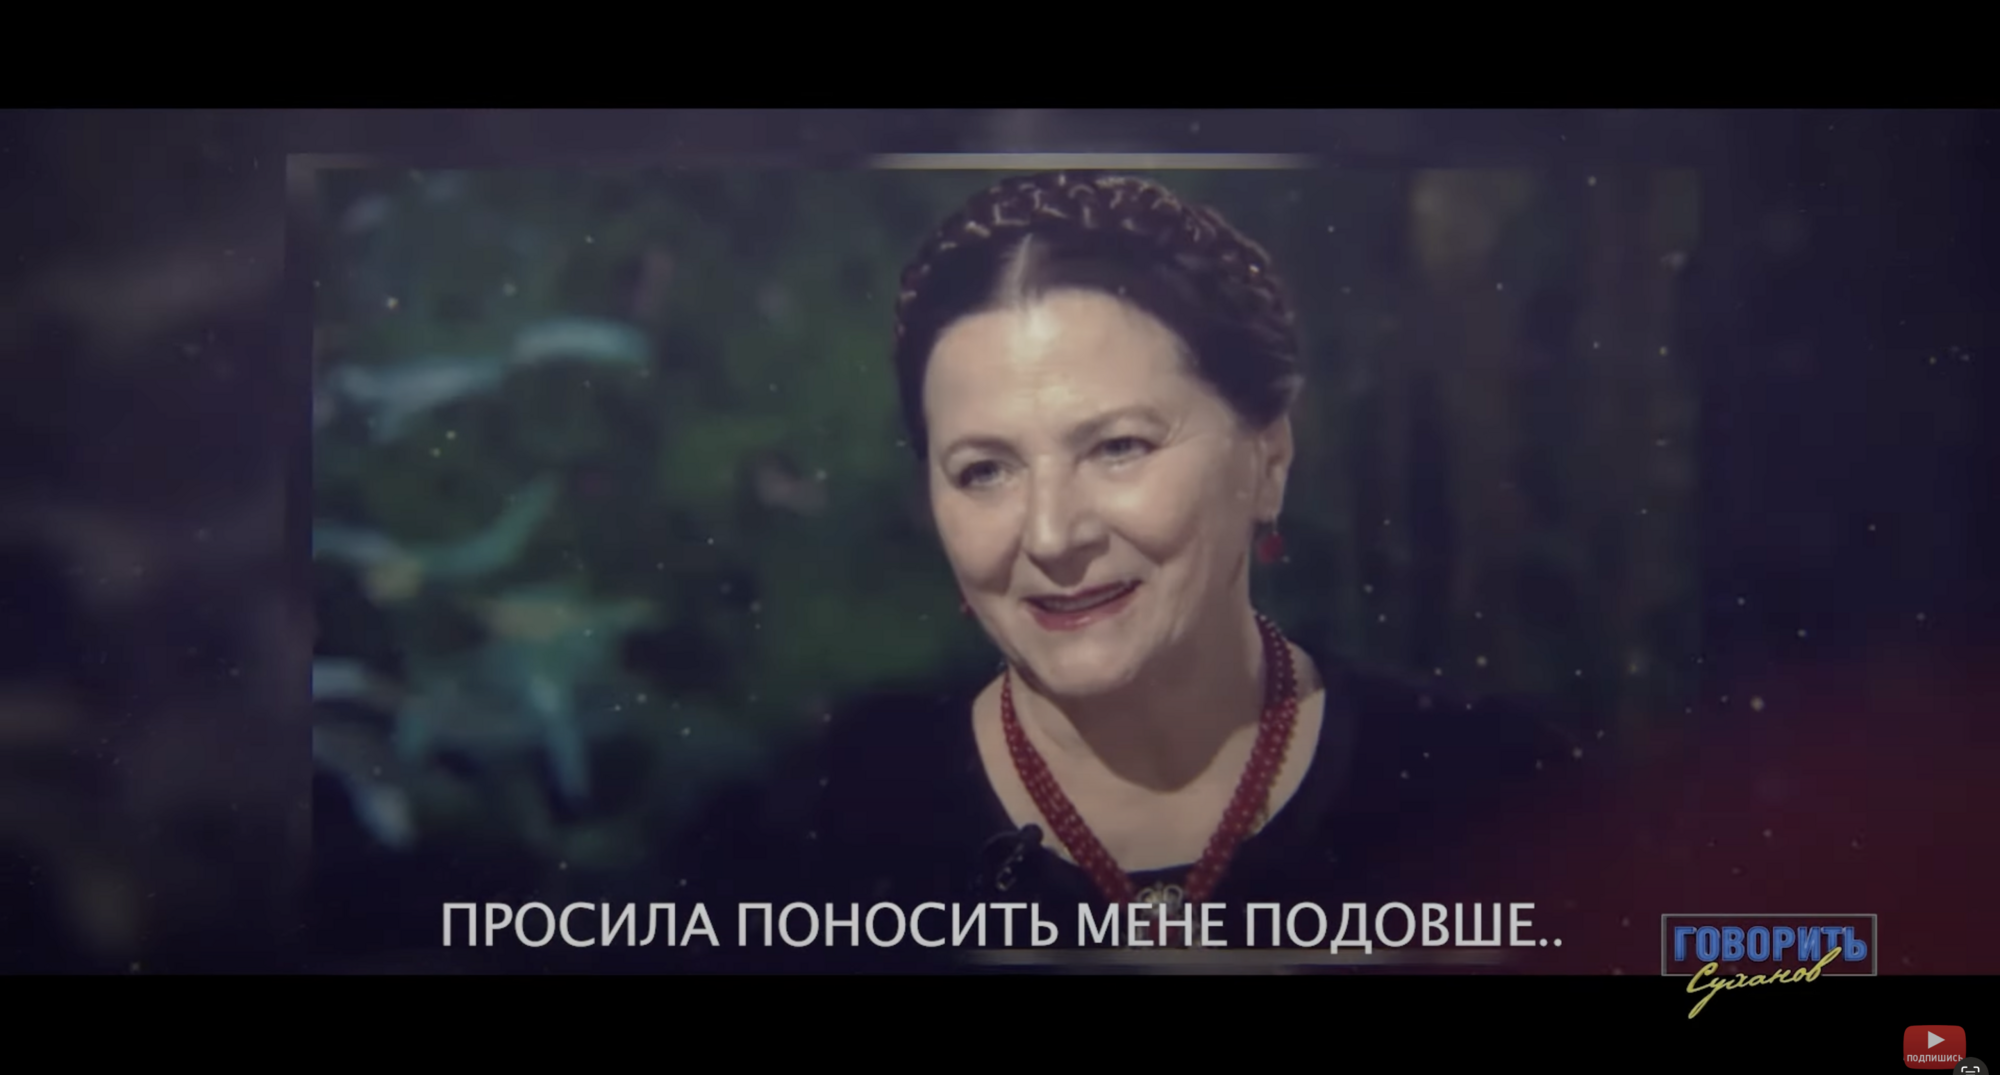 "Моліться за Україну! Вона варта цієї молитви..." Оприлюднено одне з останніх аудіоповідомлень Ніни Матвієнко